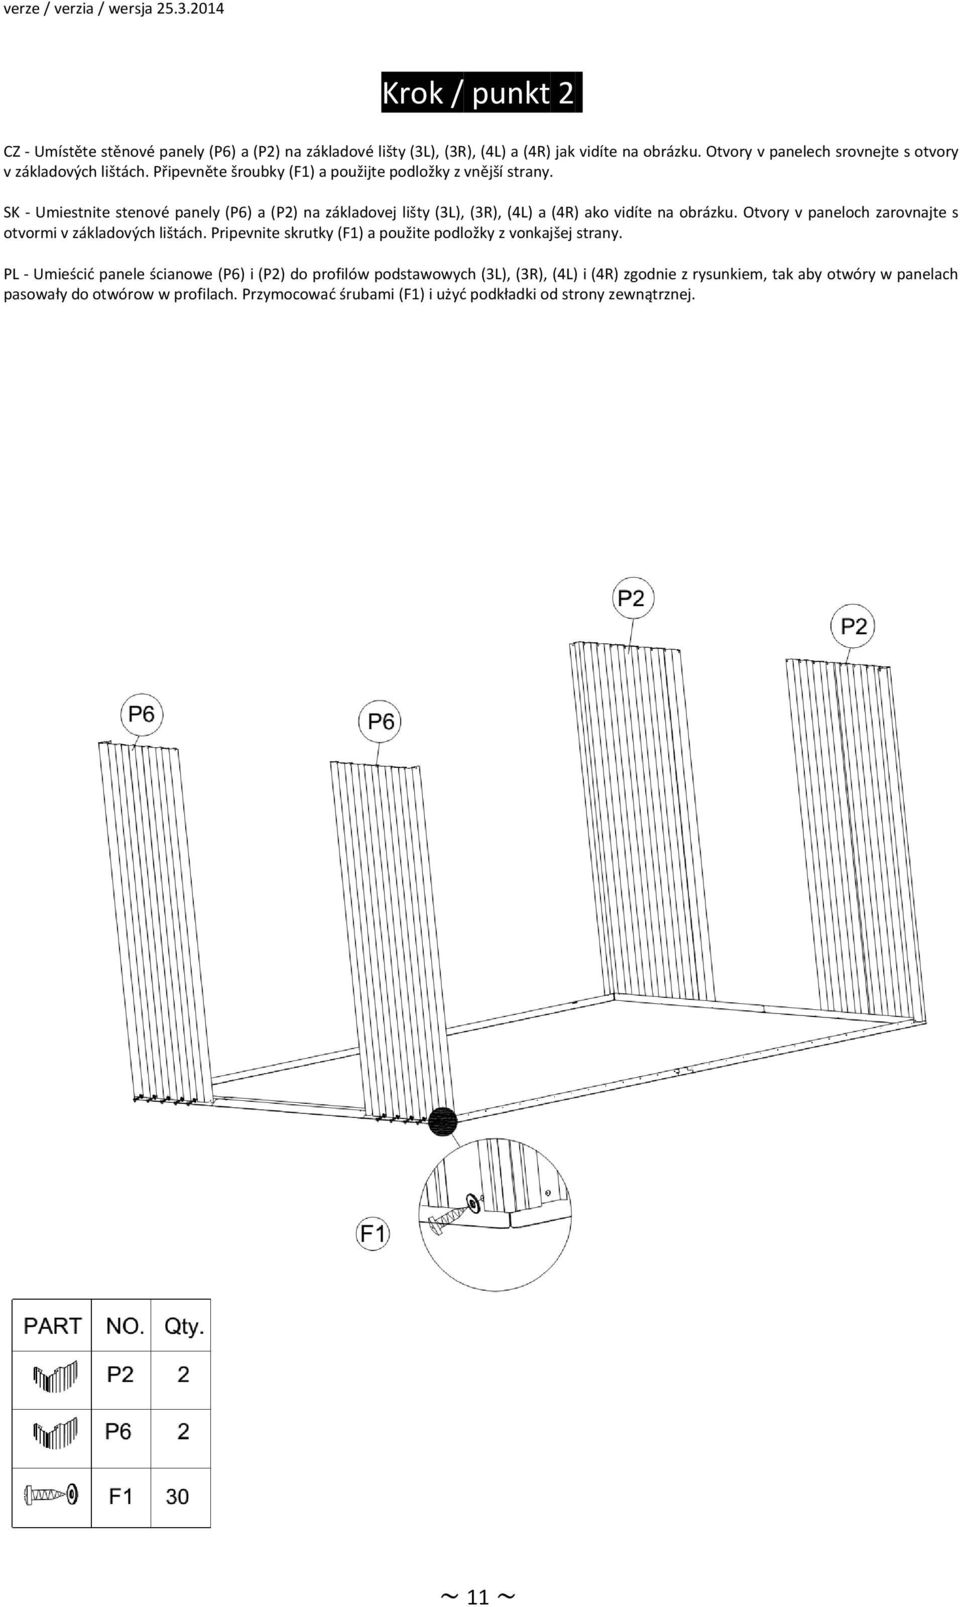 SK Umiestnite stenové panely (P6) a (P2) na základovej lišty (3L), (3R), (4L) a (4R) ako vidíte na obrázku. Otvory v paneloch zarovnajte s otvormi v základových lištách.